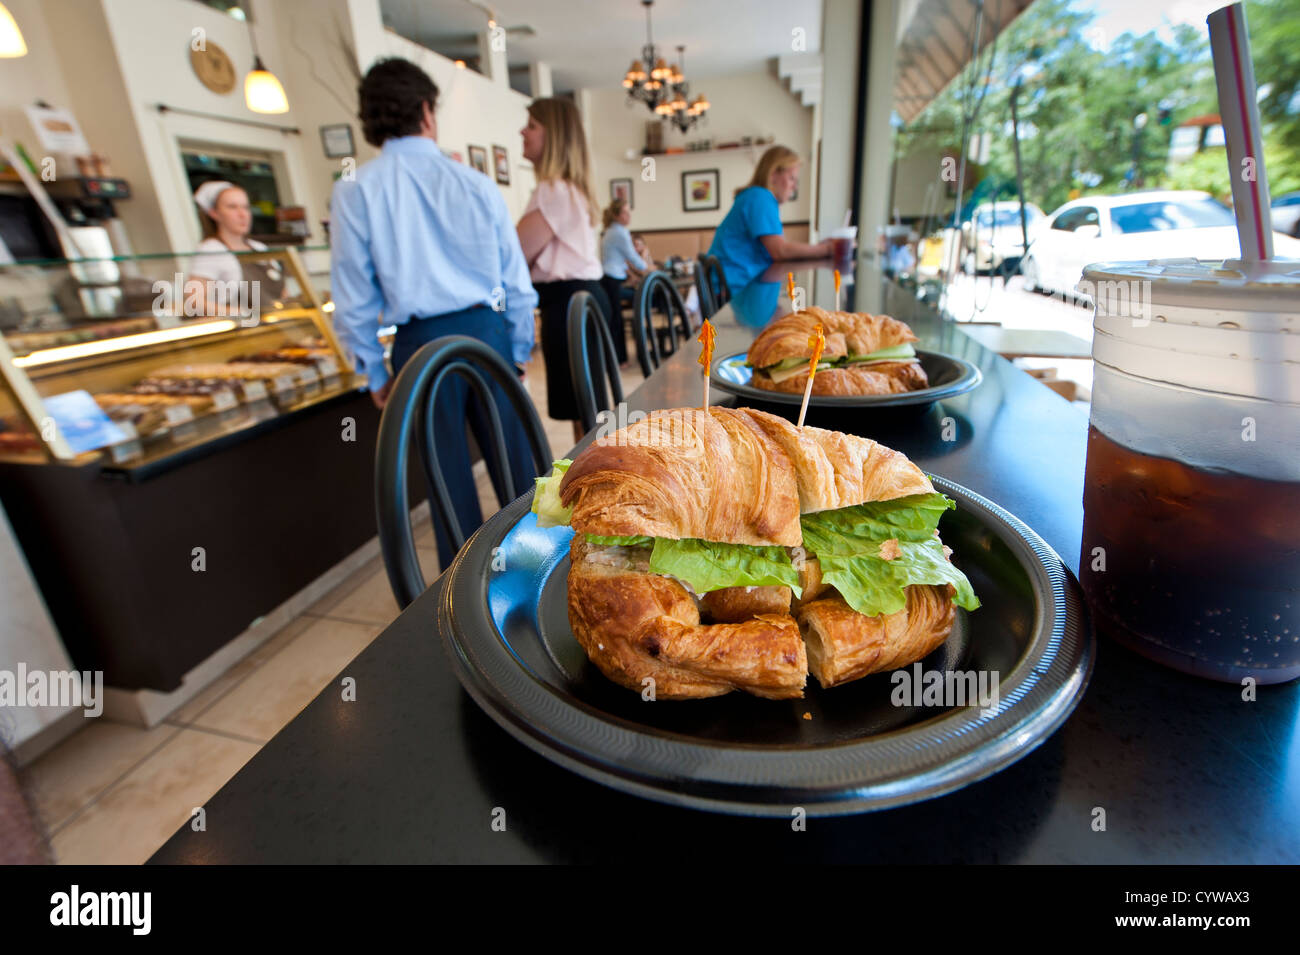 USA, Floride. Des sandwichs au Croissant Croissant café-pâtisserie gastronomique le centre-ville de Winter Park, Floride. Banque D'Images